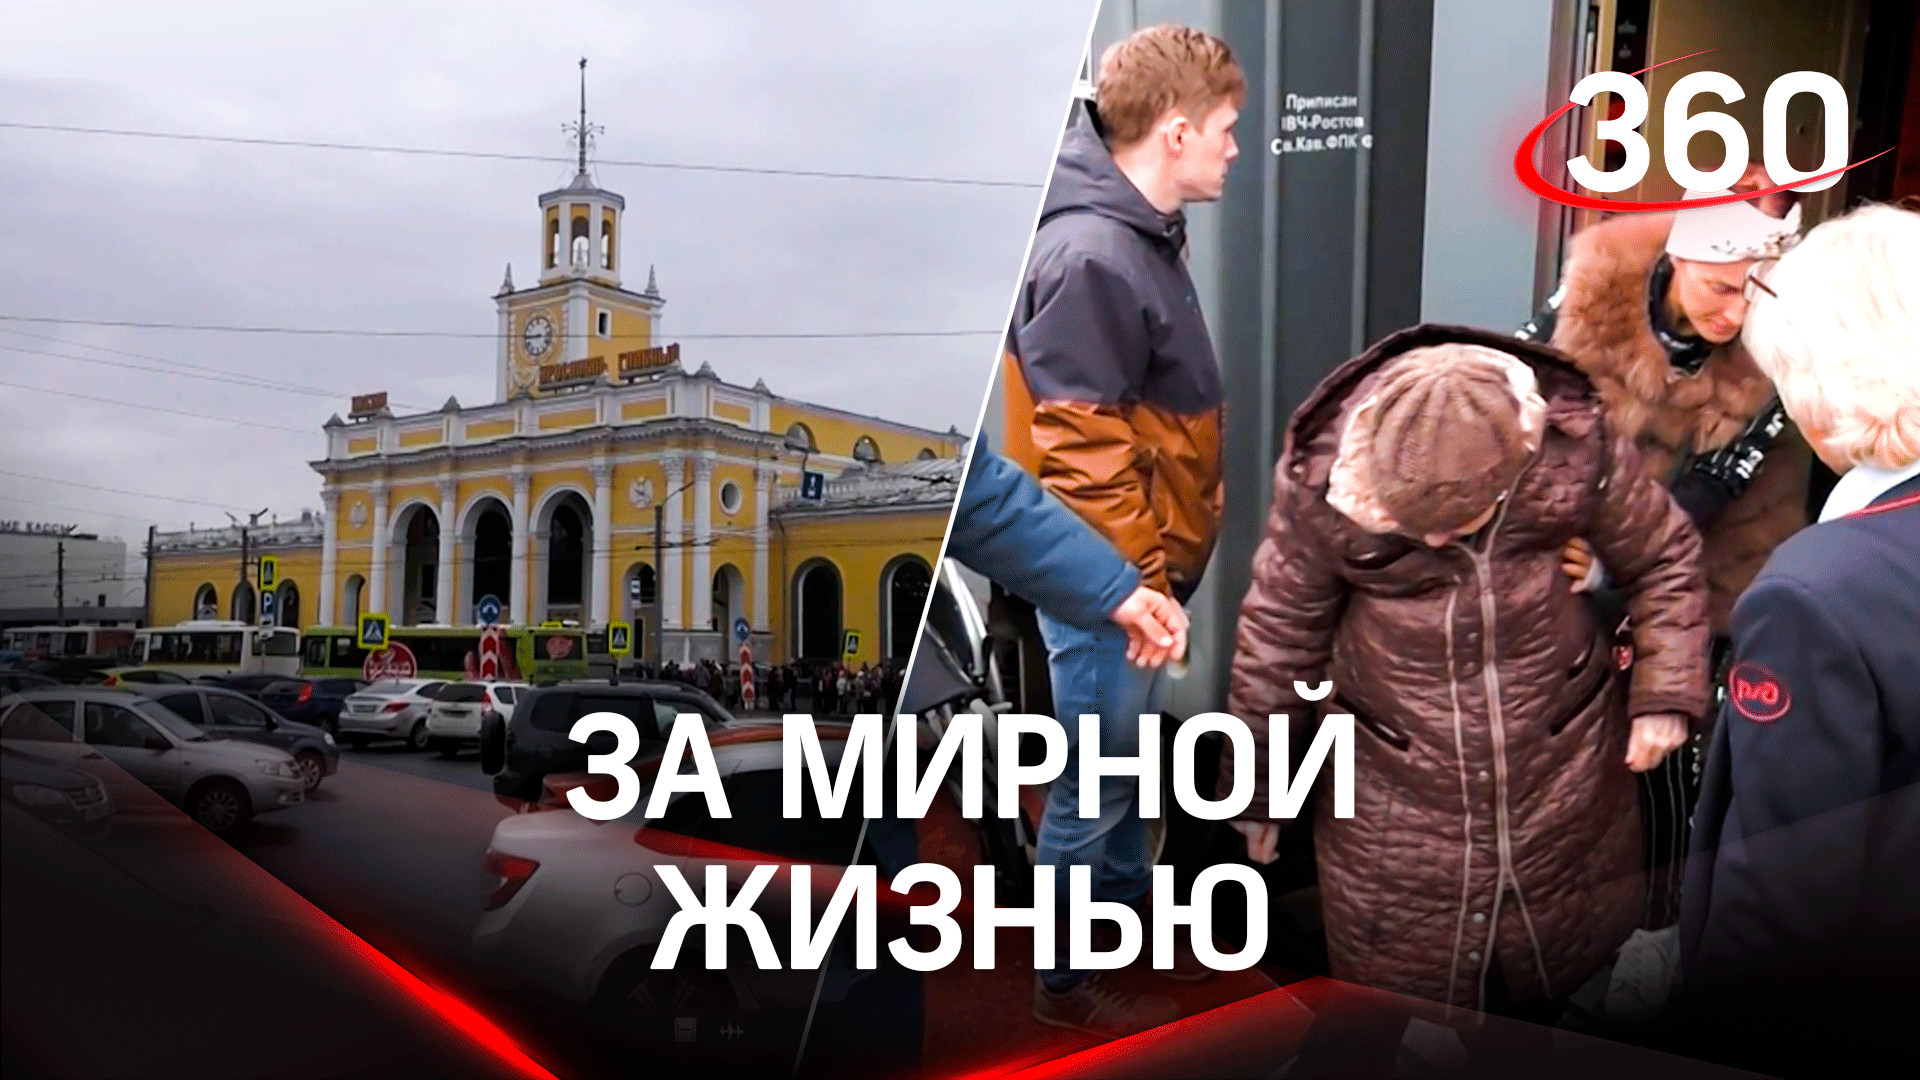 В Ярославль прибыло 100 переселенцев из ДНР и ЛНР